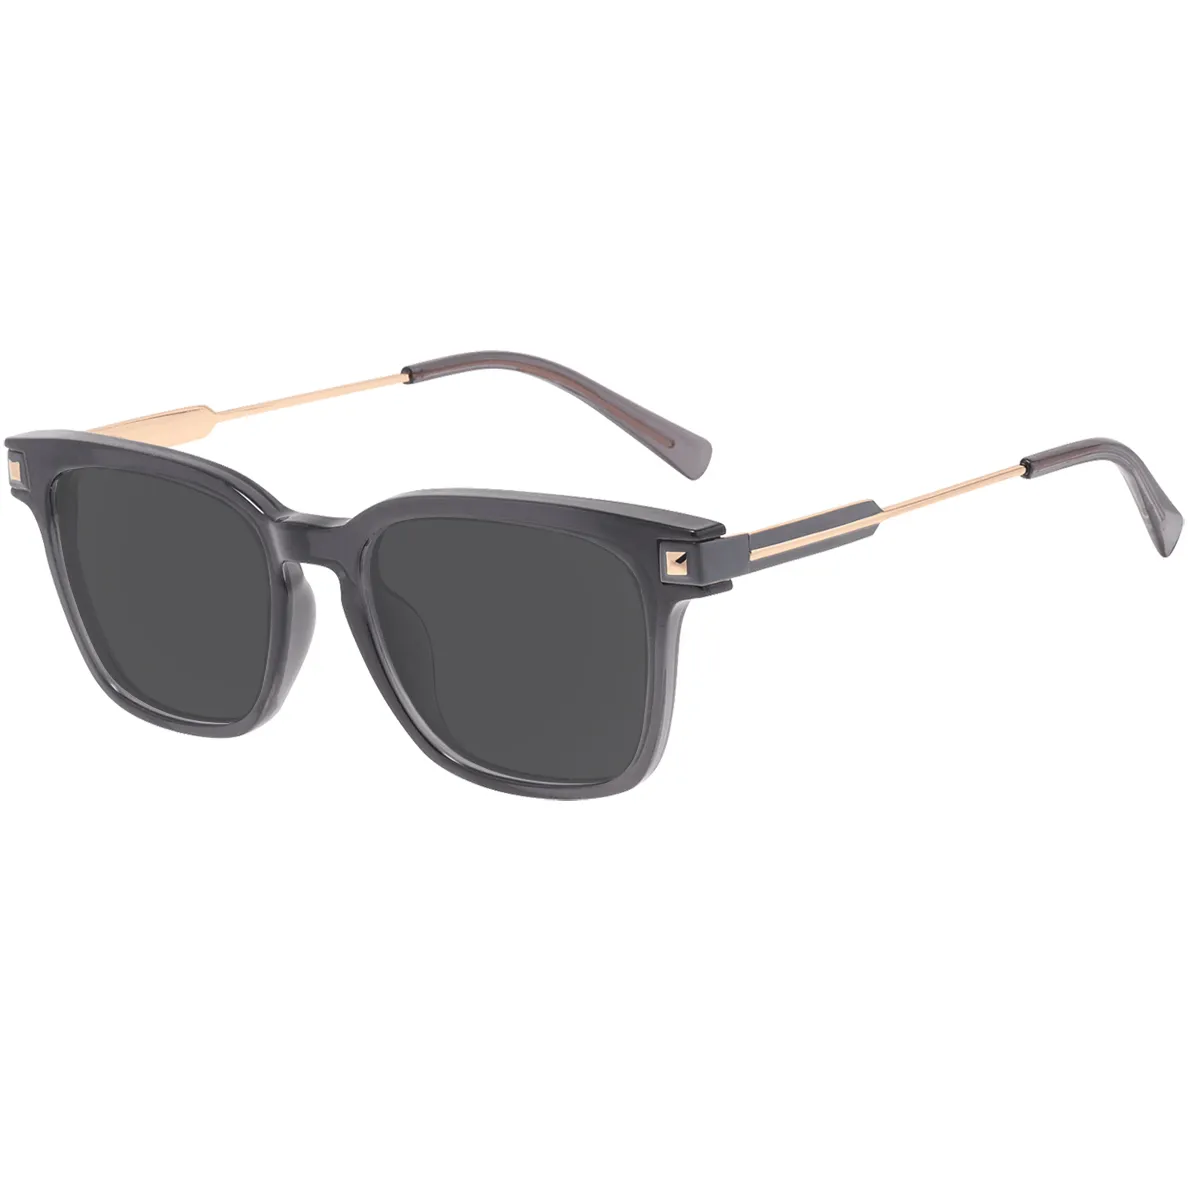 Jarred - Square Gray Sunglasses for Women